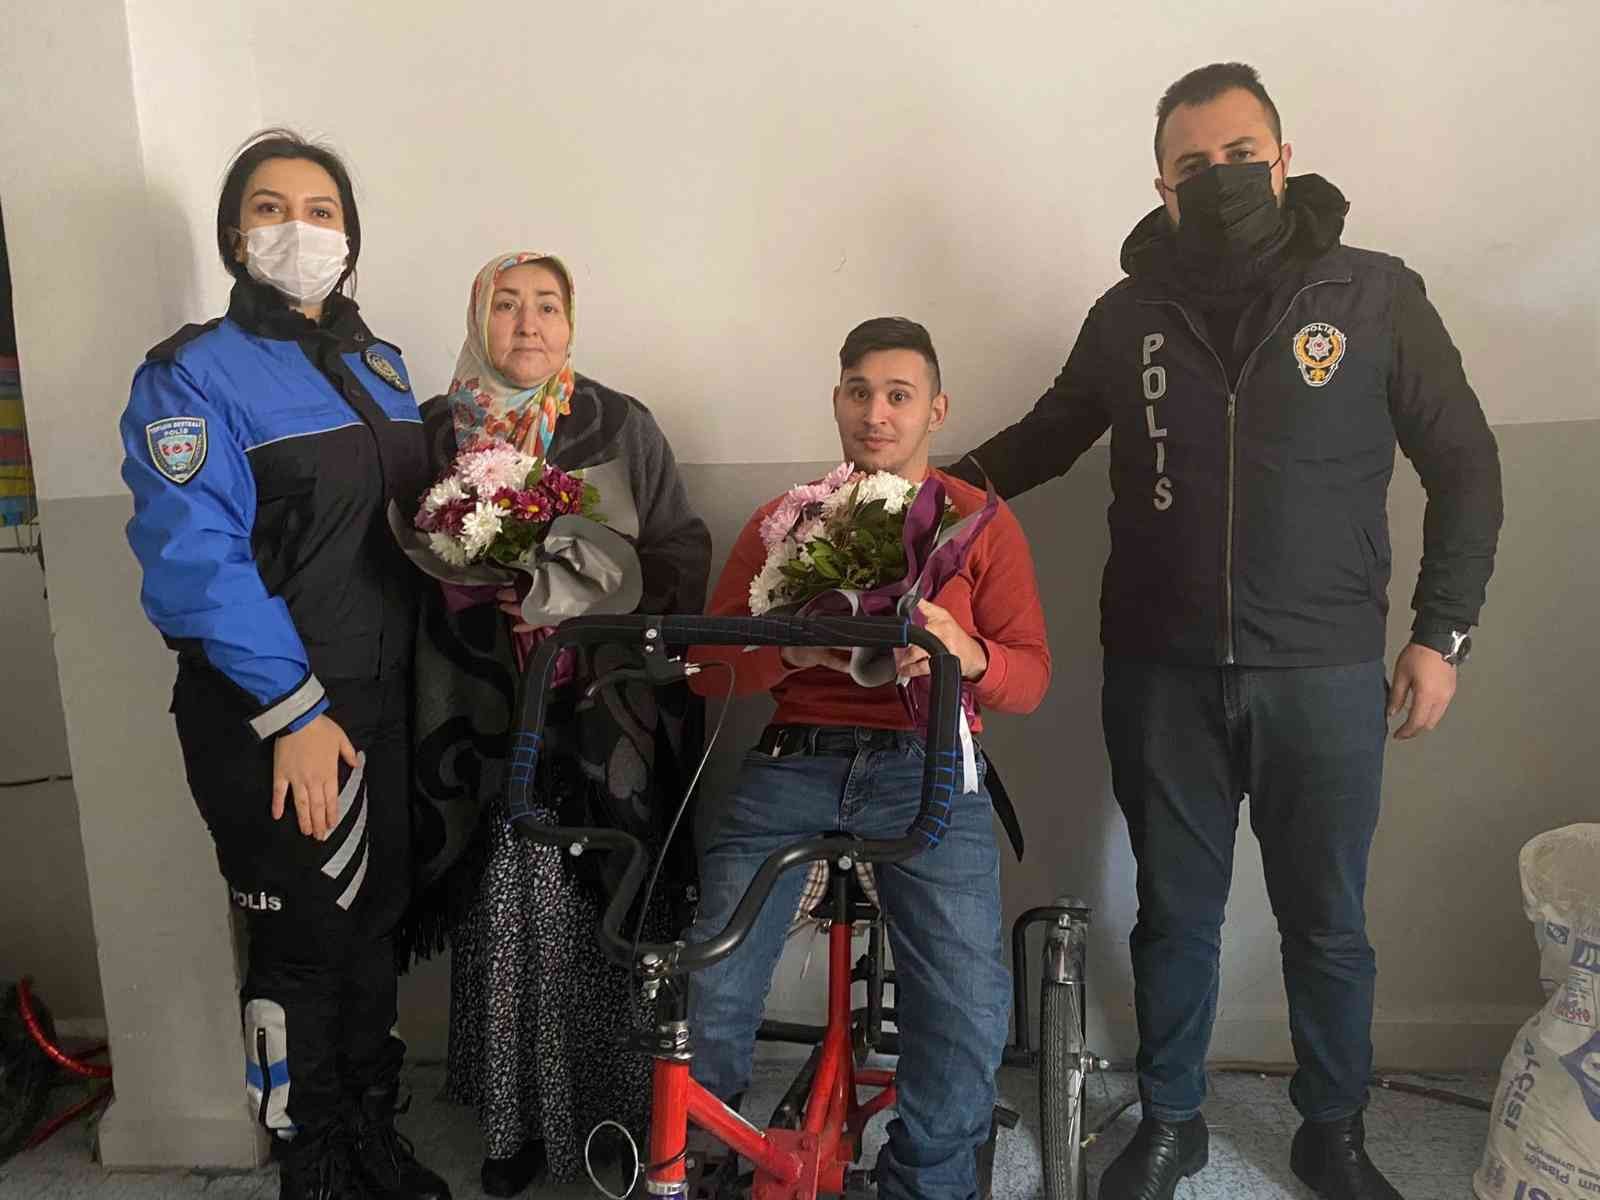 Yürüme engelli kişinin elektrikli bisikletini çalan şüpheli yakalandı #istanbul